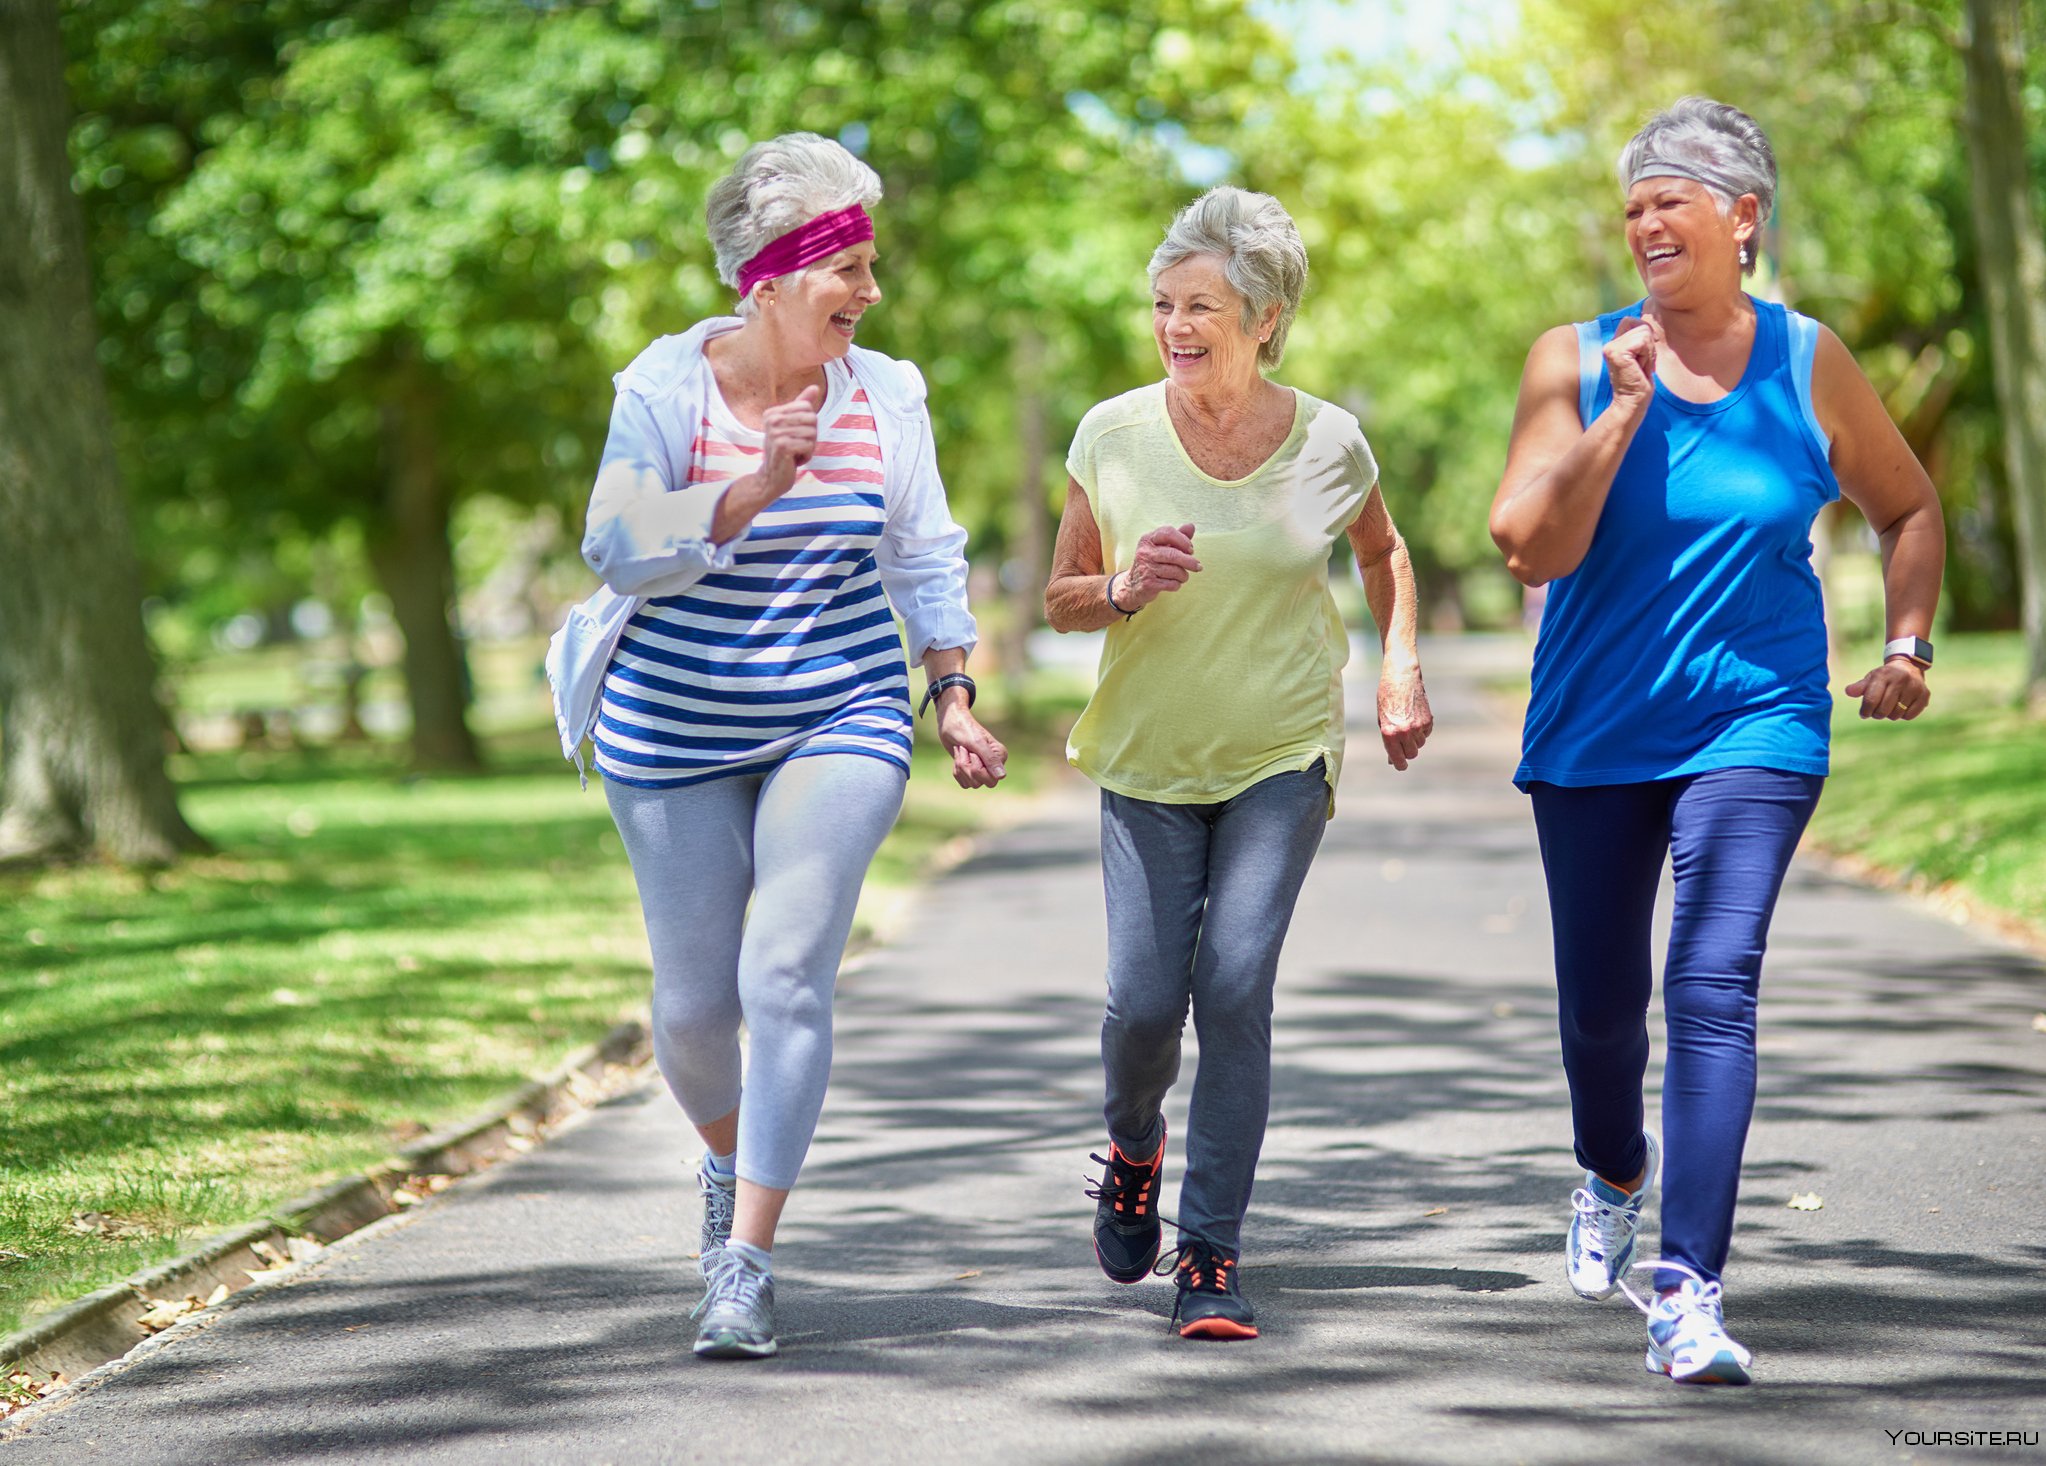 Активное долголетие это. Активный образ жизни. Здоровый образ жизни для пожилых людей. Пенсионеры активный образ жизни. Пожилые люди спорт.